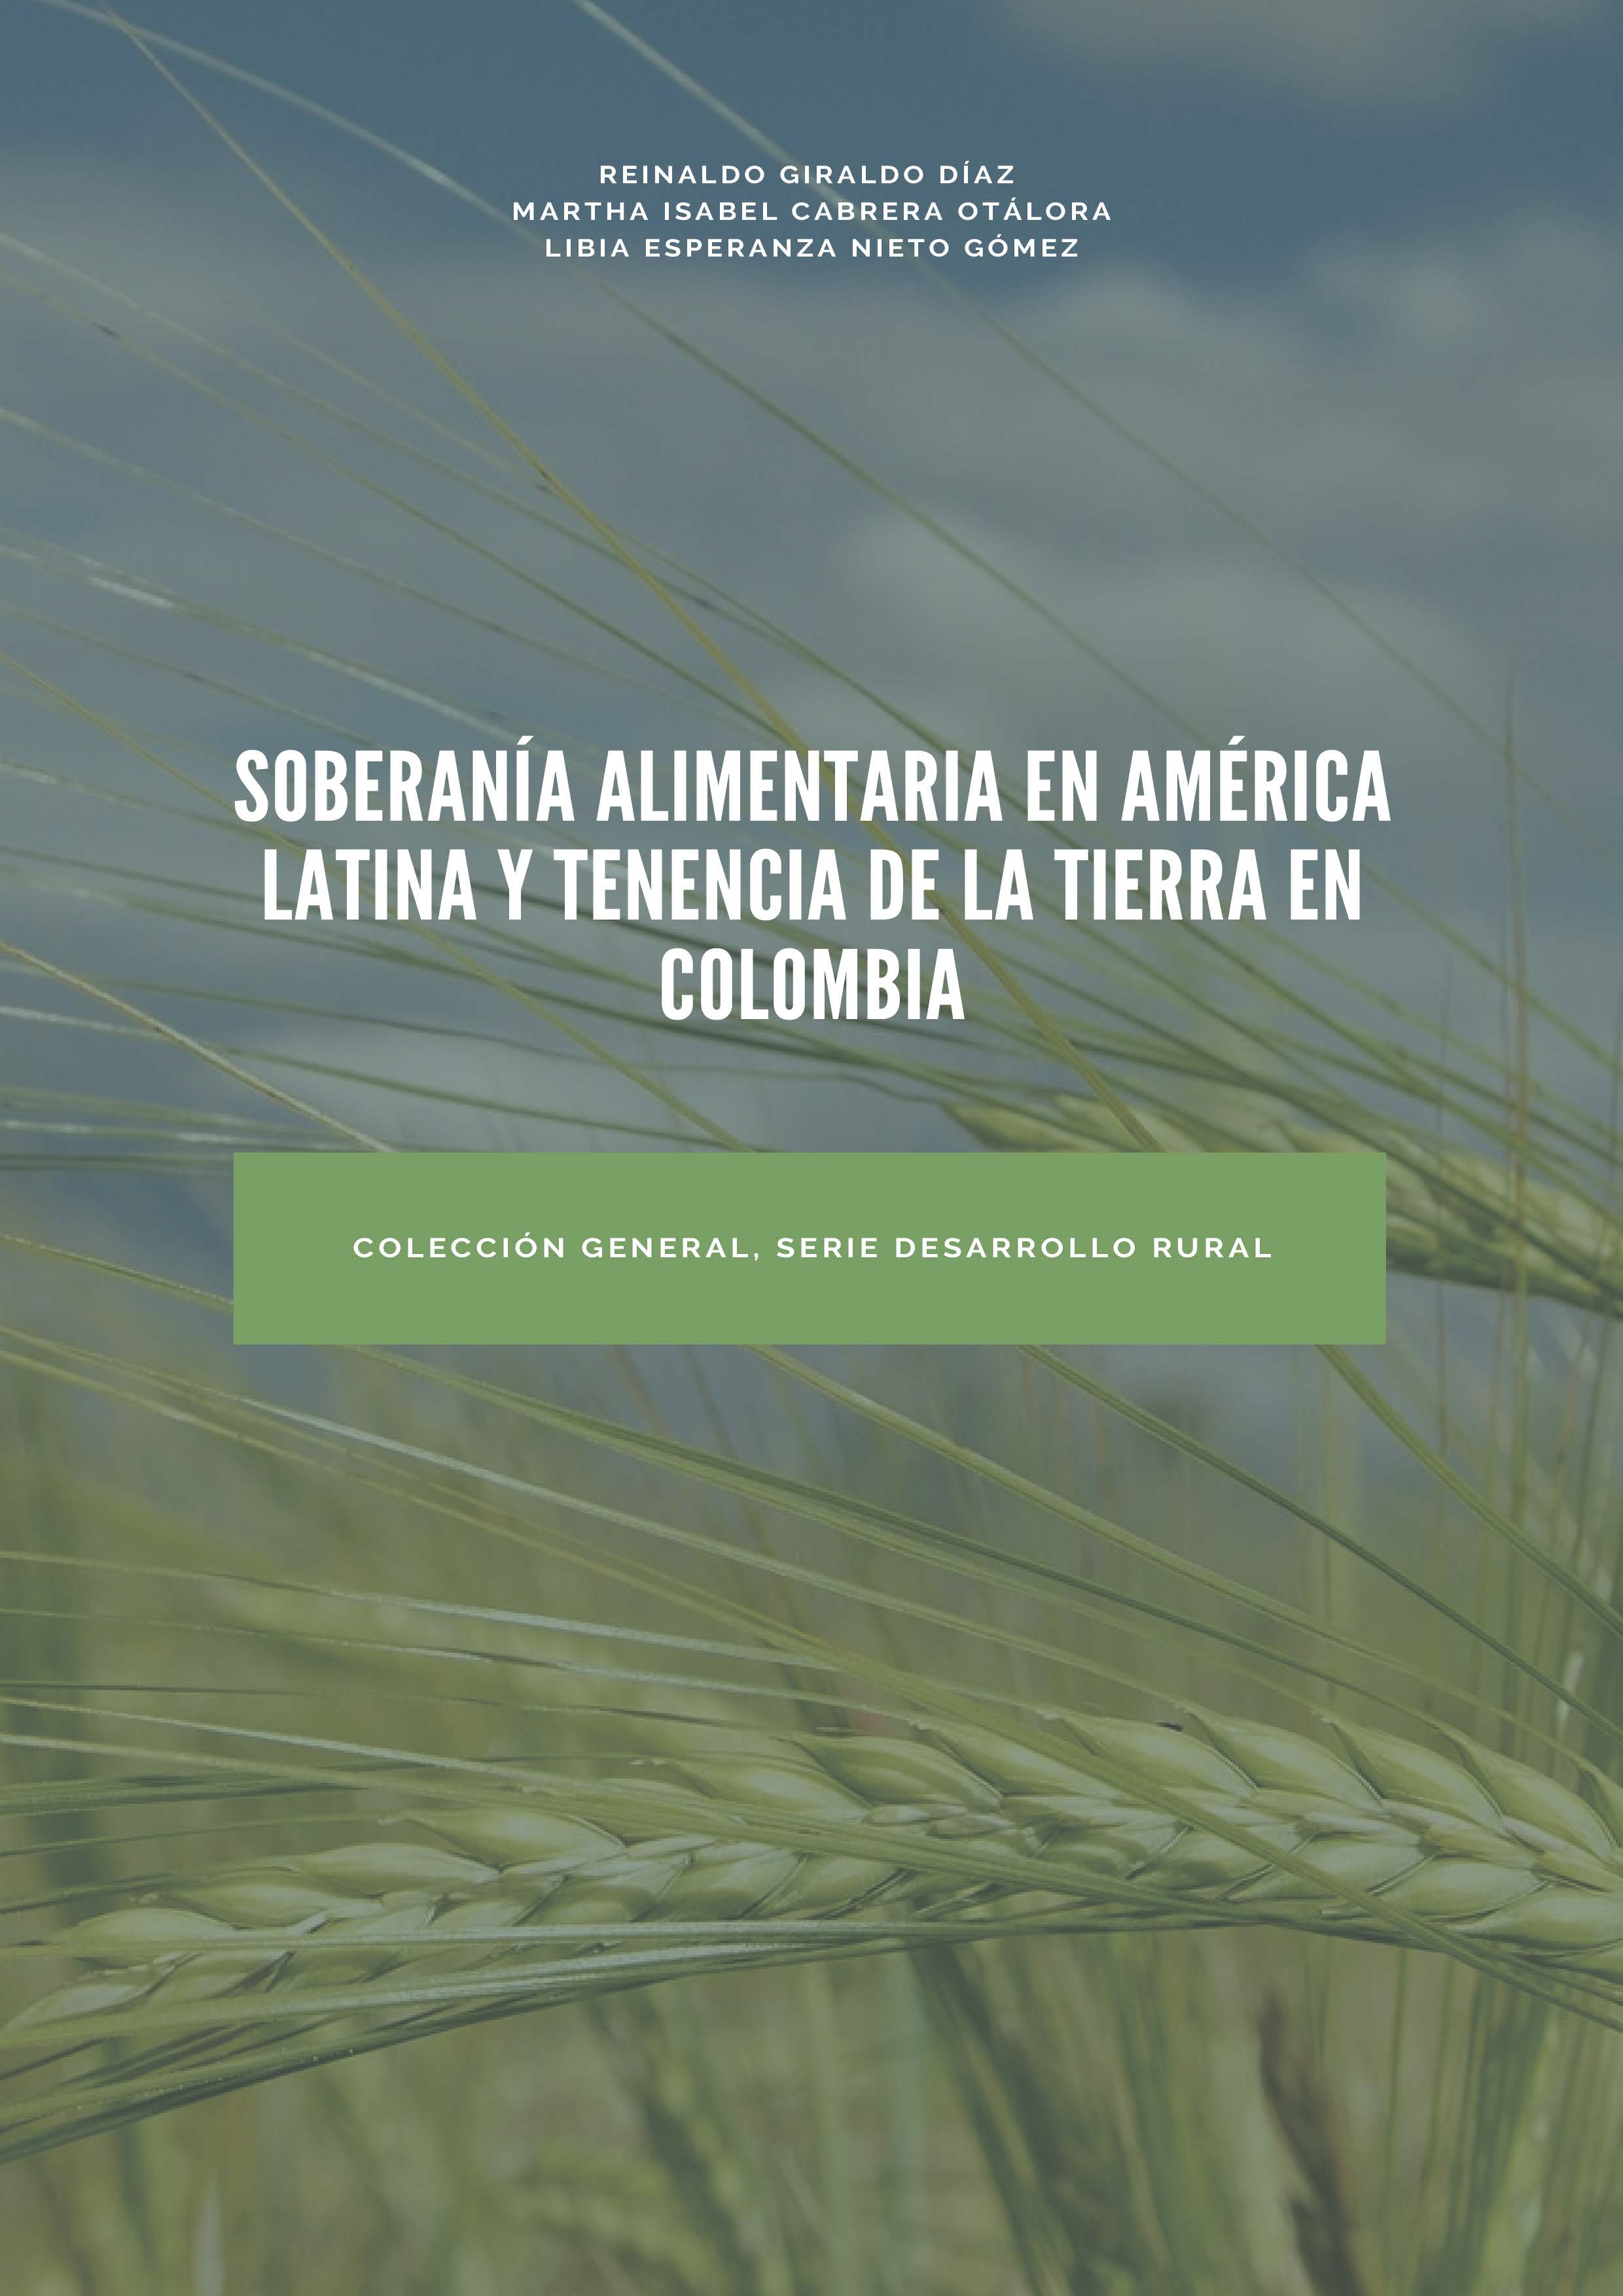 SOBERANÍA ALIMENTARIA EN AMÉRICA LATINA Y TENENCIA DE LA TIERRA EN COLOMBIA